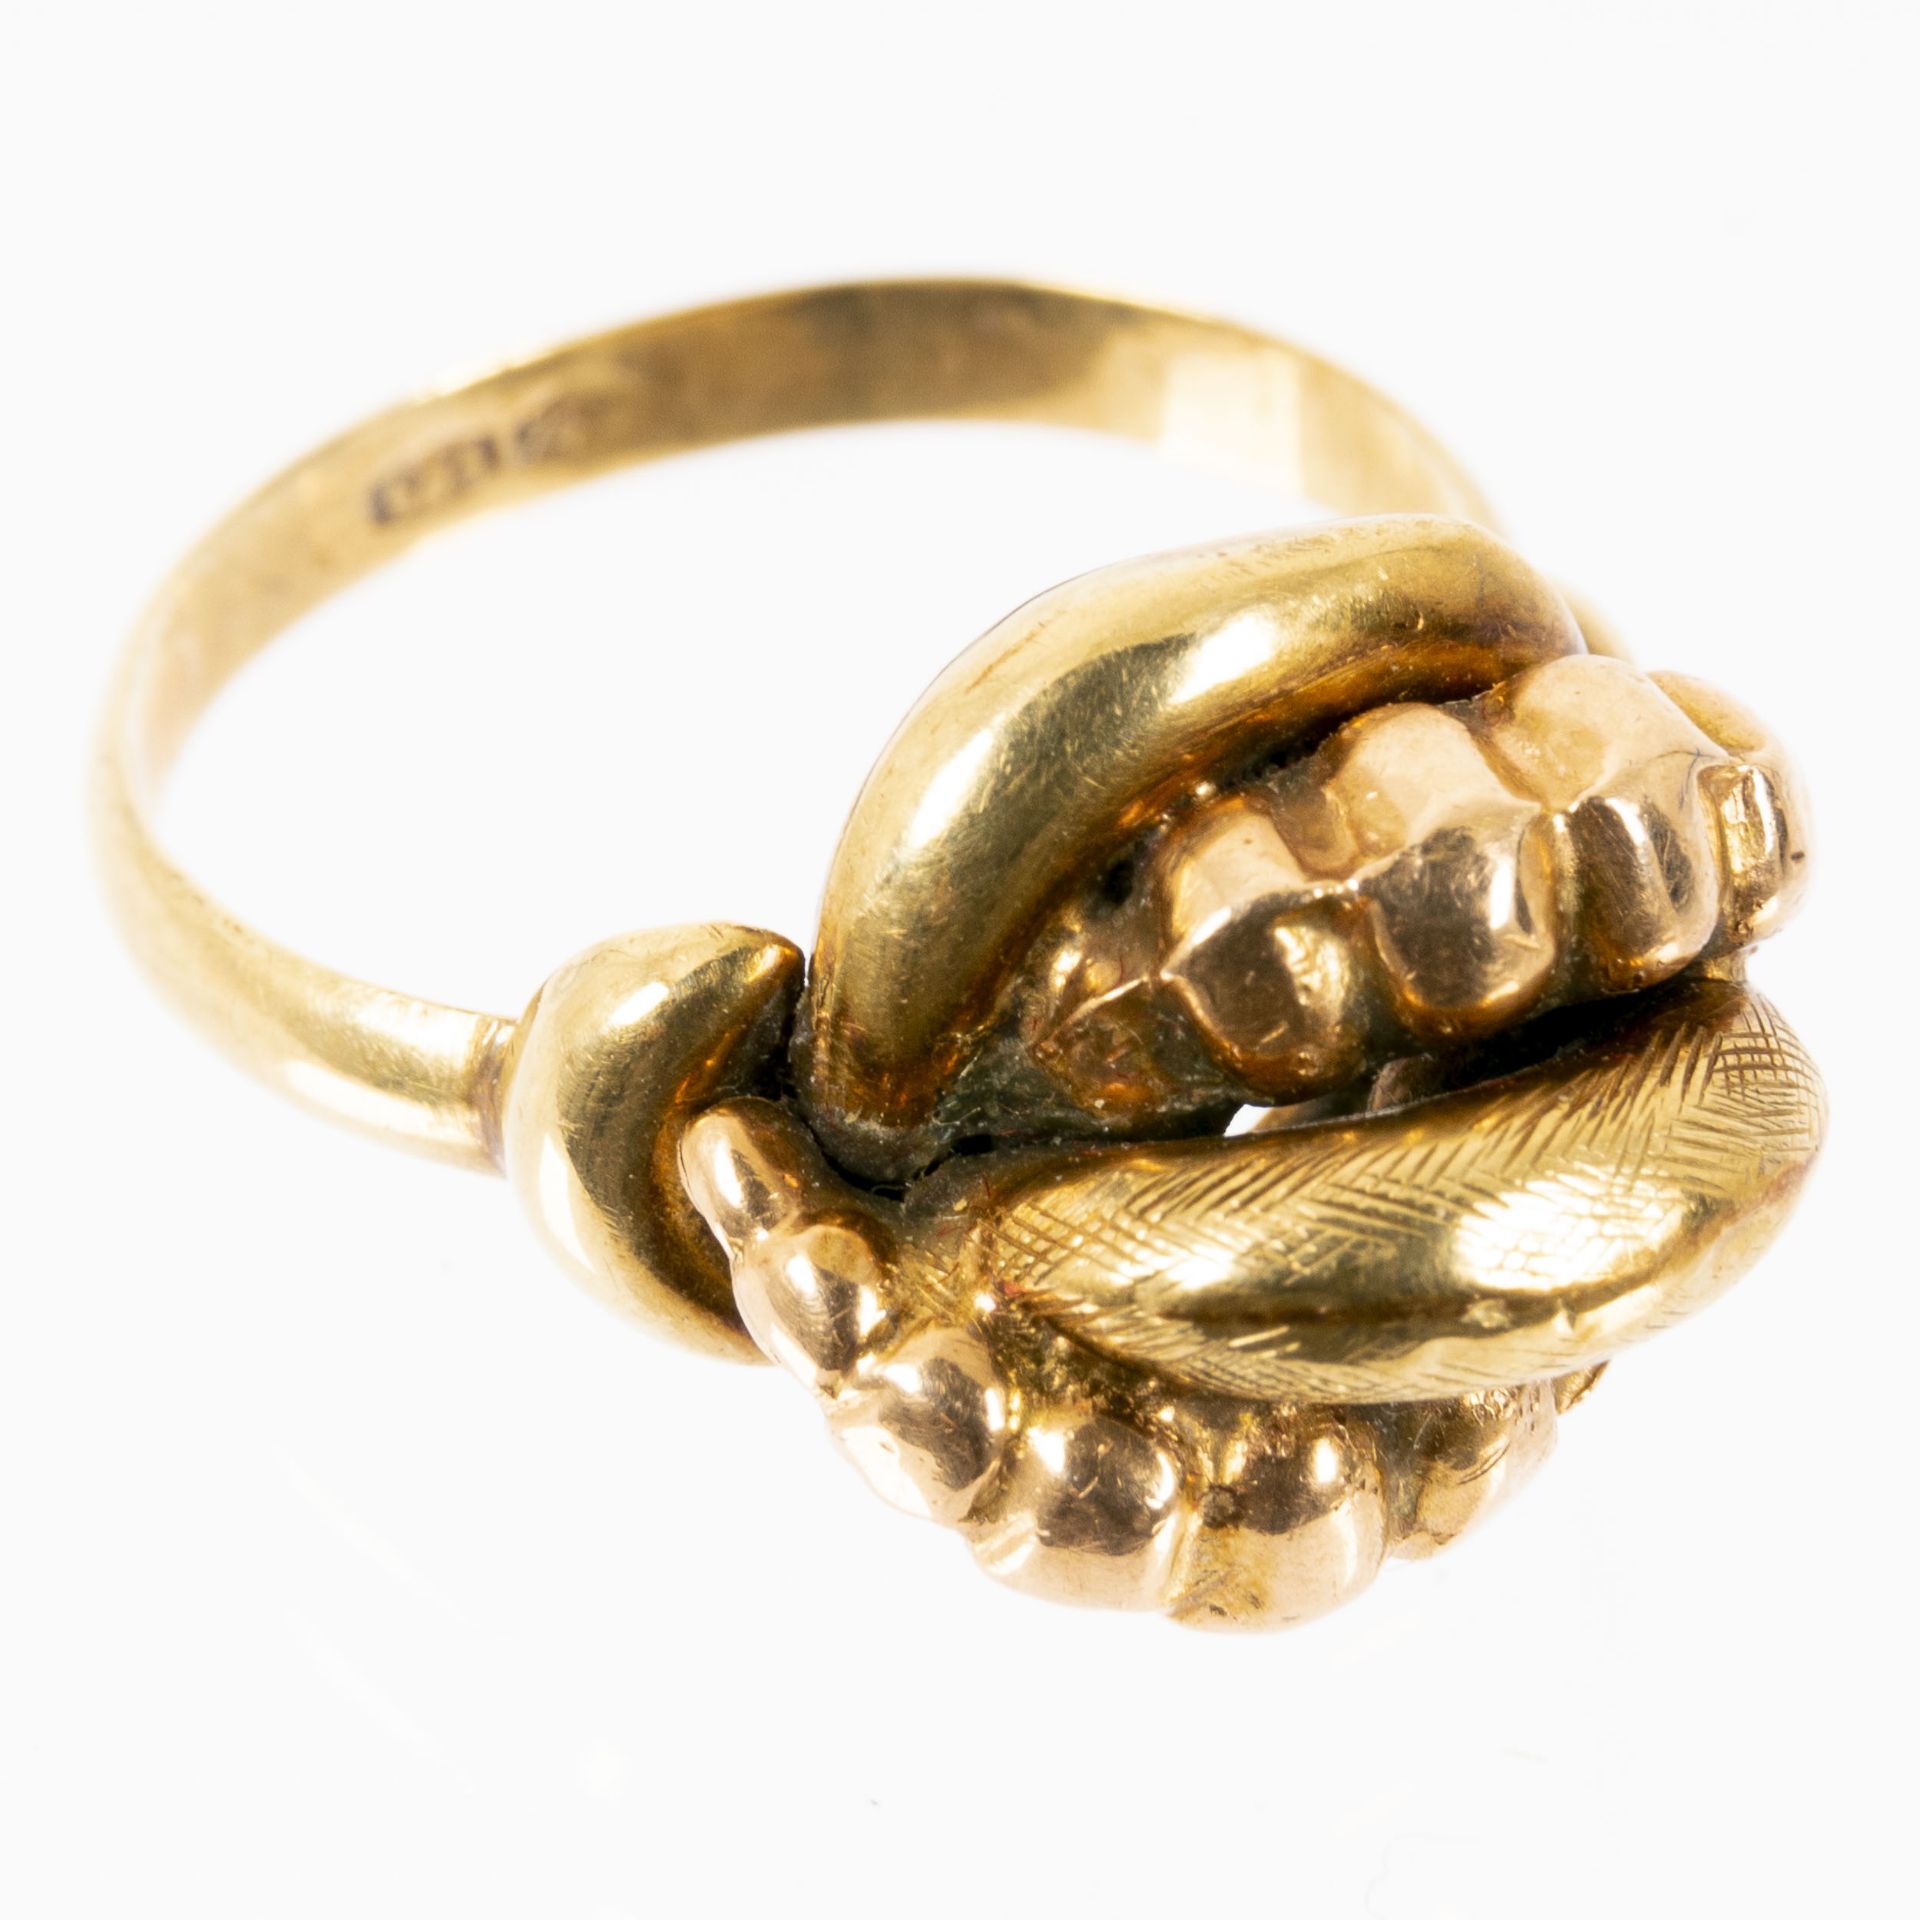 Alter 585er Gelbgold-Ring, an einen "Dutt" erinnernd, Innendurchmesser ca. 17 mm, ca. 5 gr.